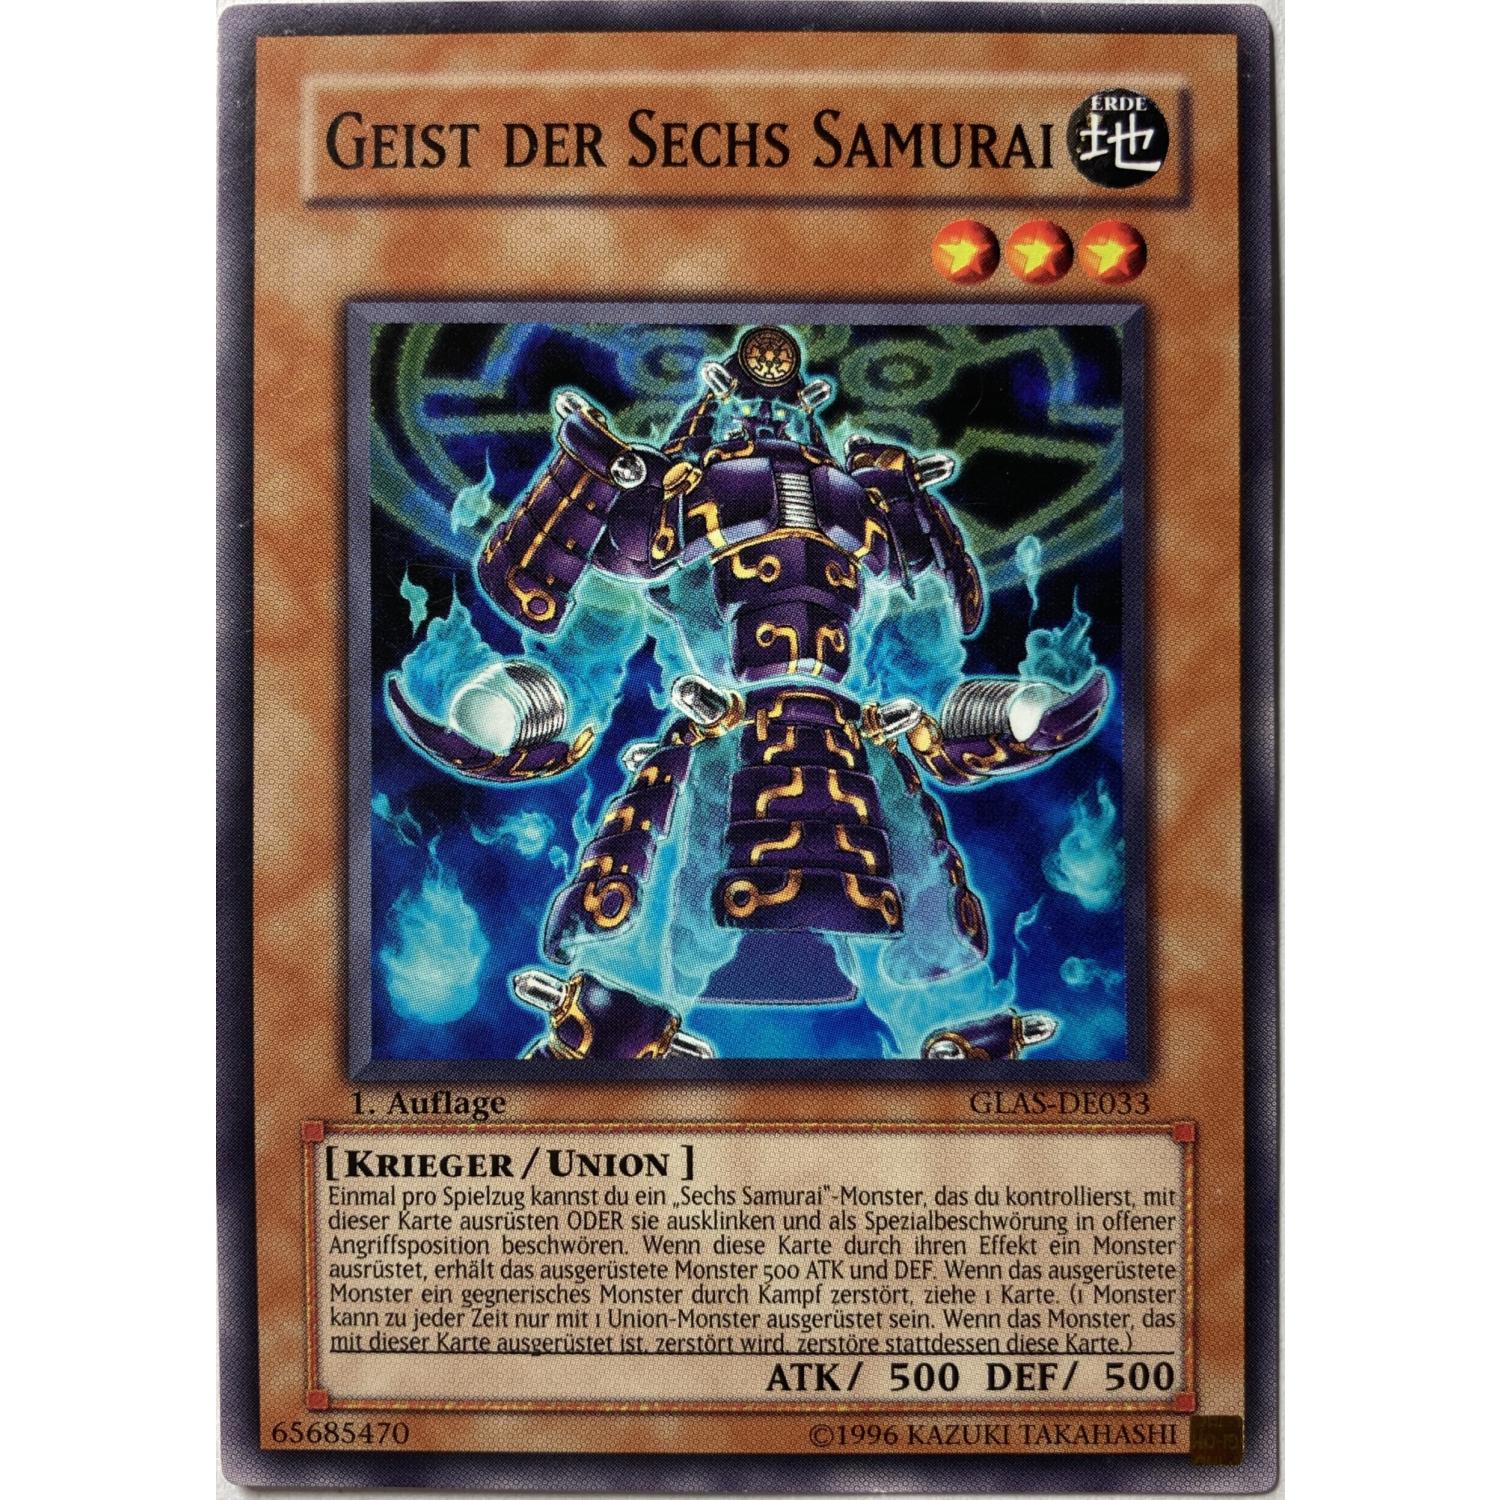 Geist der Sechs Samurai 1. Auflage GLAS-DE033 Common | EX